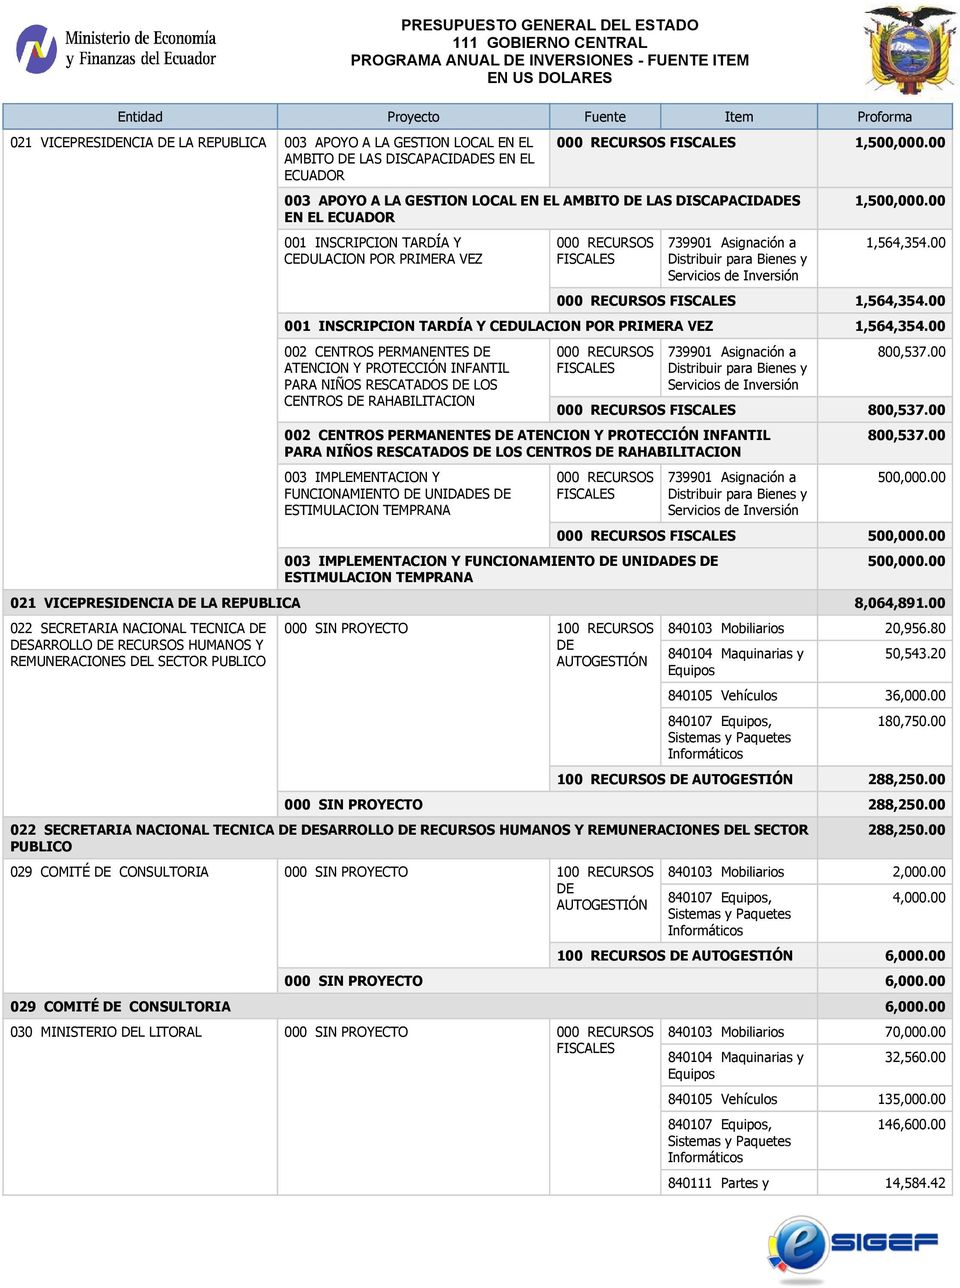 00 001 INSCRIPCION TARDÍA Y CEDULACION POR PRIMERA VEZ 1,564,354.